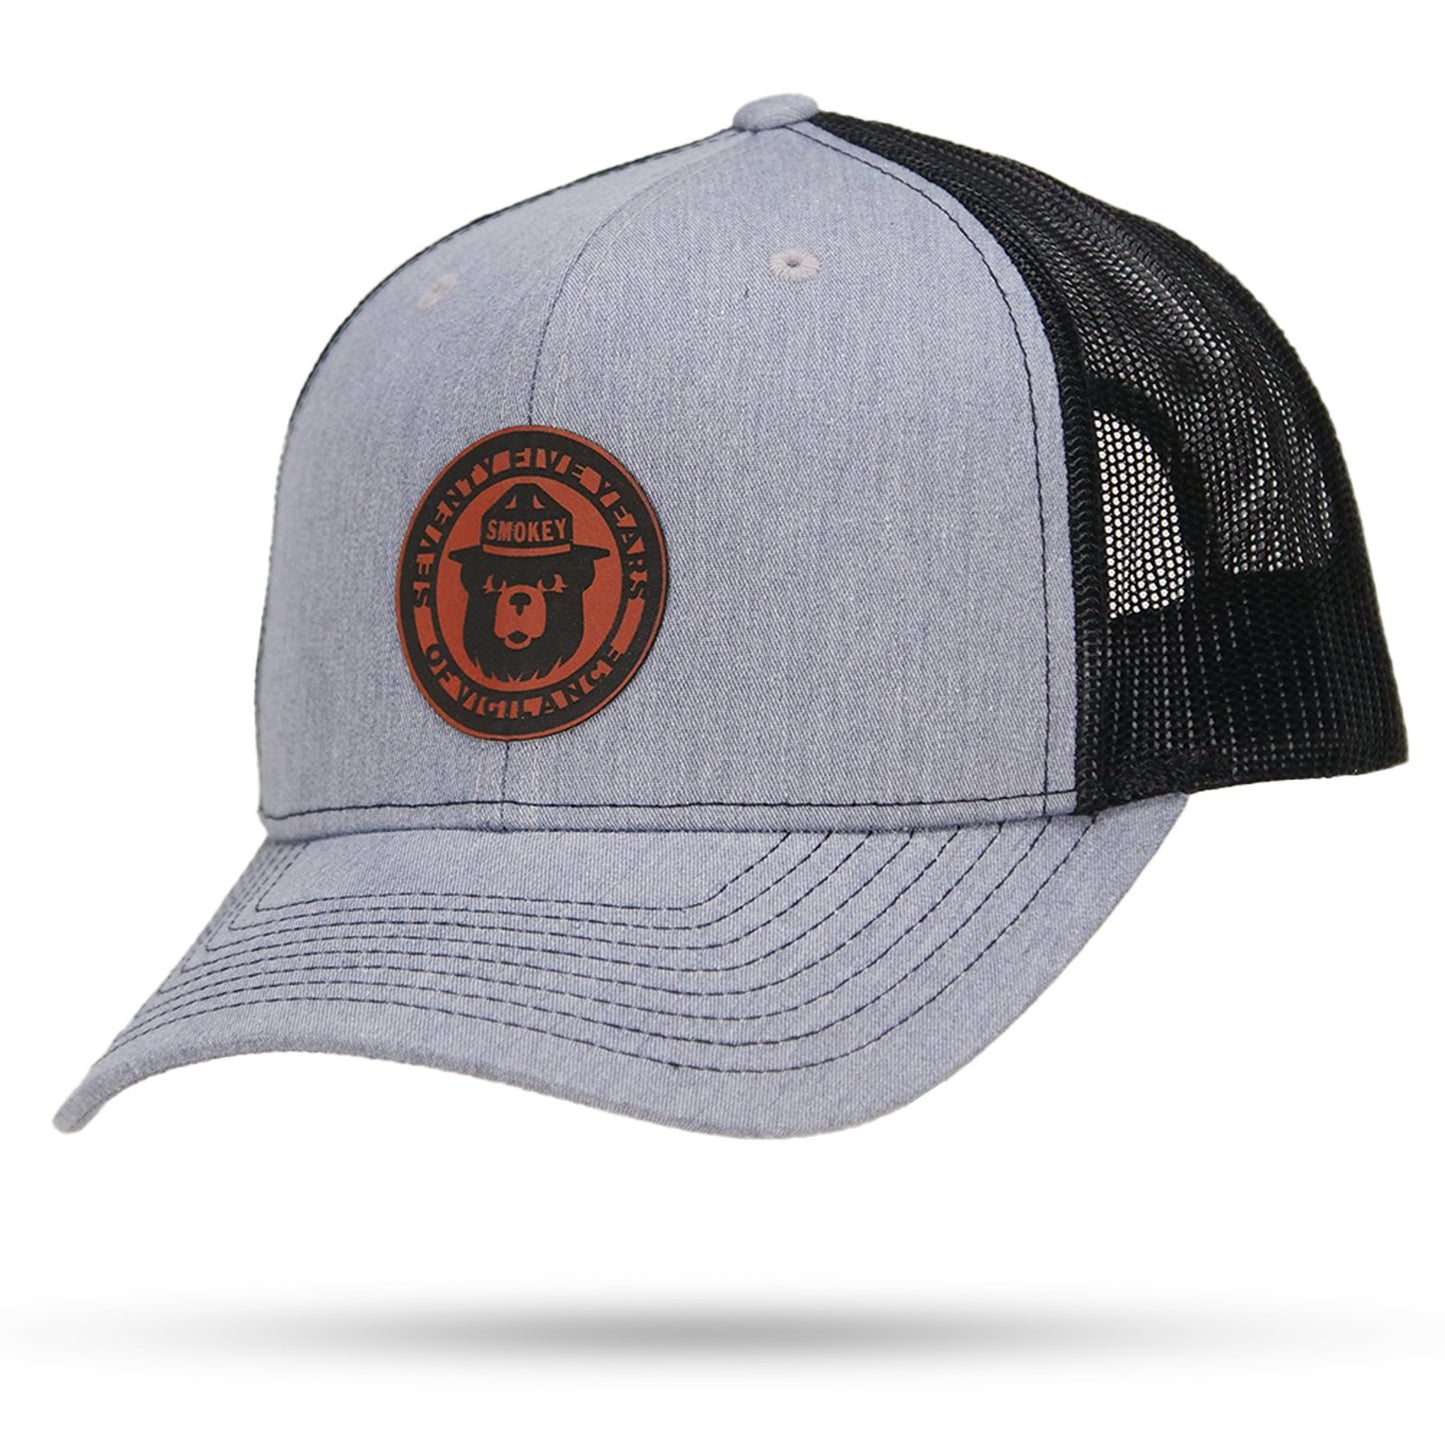 WYR Smokey – Years of Trucker Bear Vigilance 75 Snapback Hat